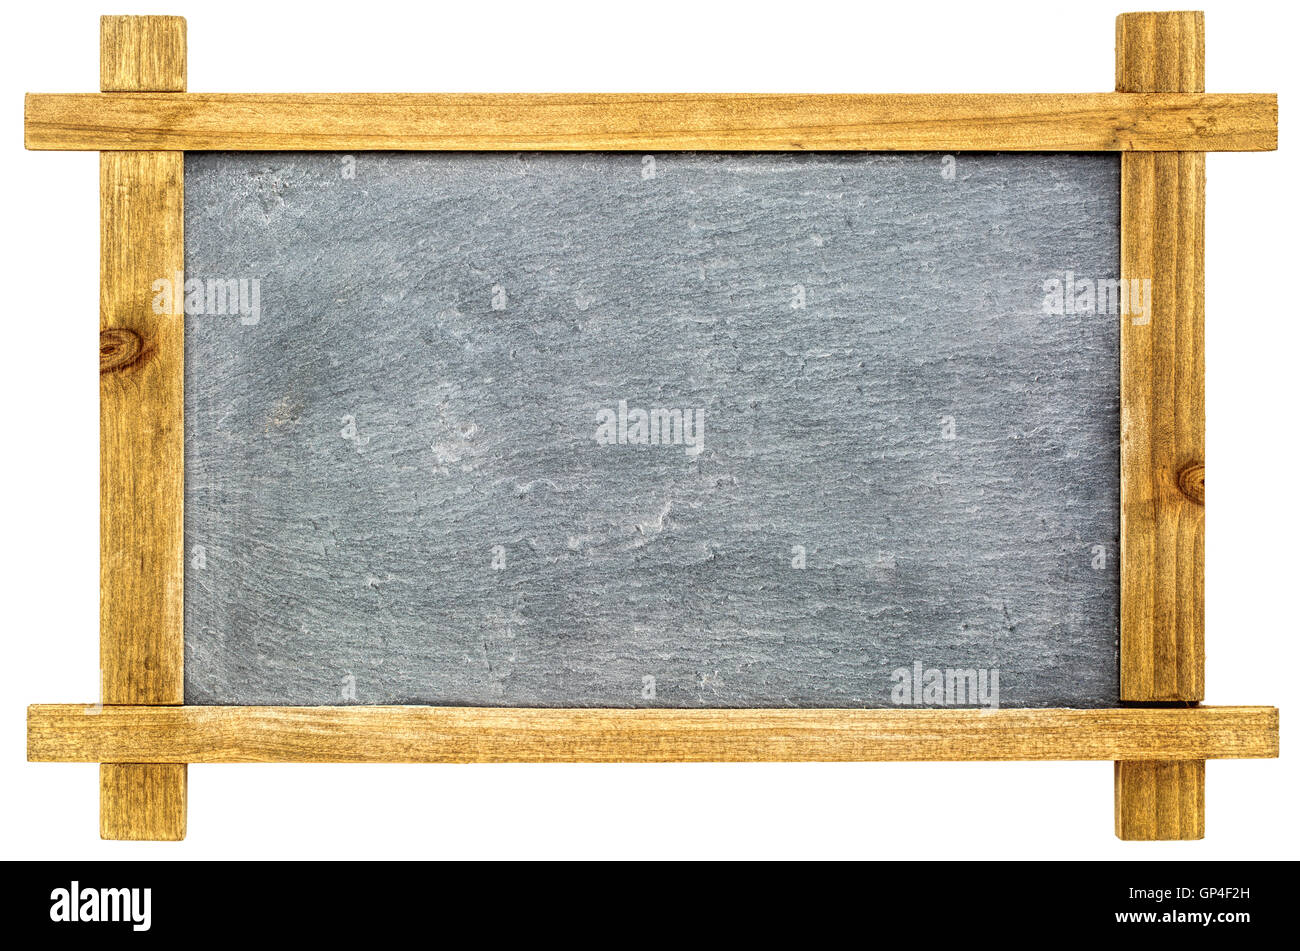 Petit tableau noir ardoise vierge avec craie blanche en bois en texture grunge frame isolated on white Banque D'Images